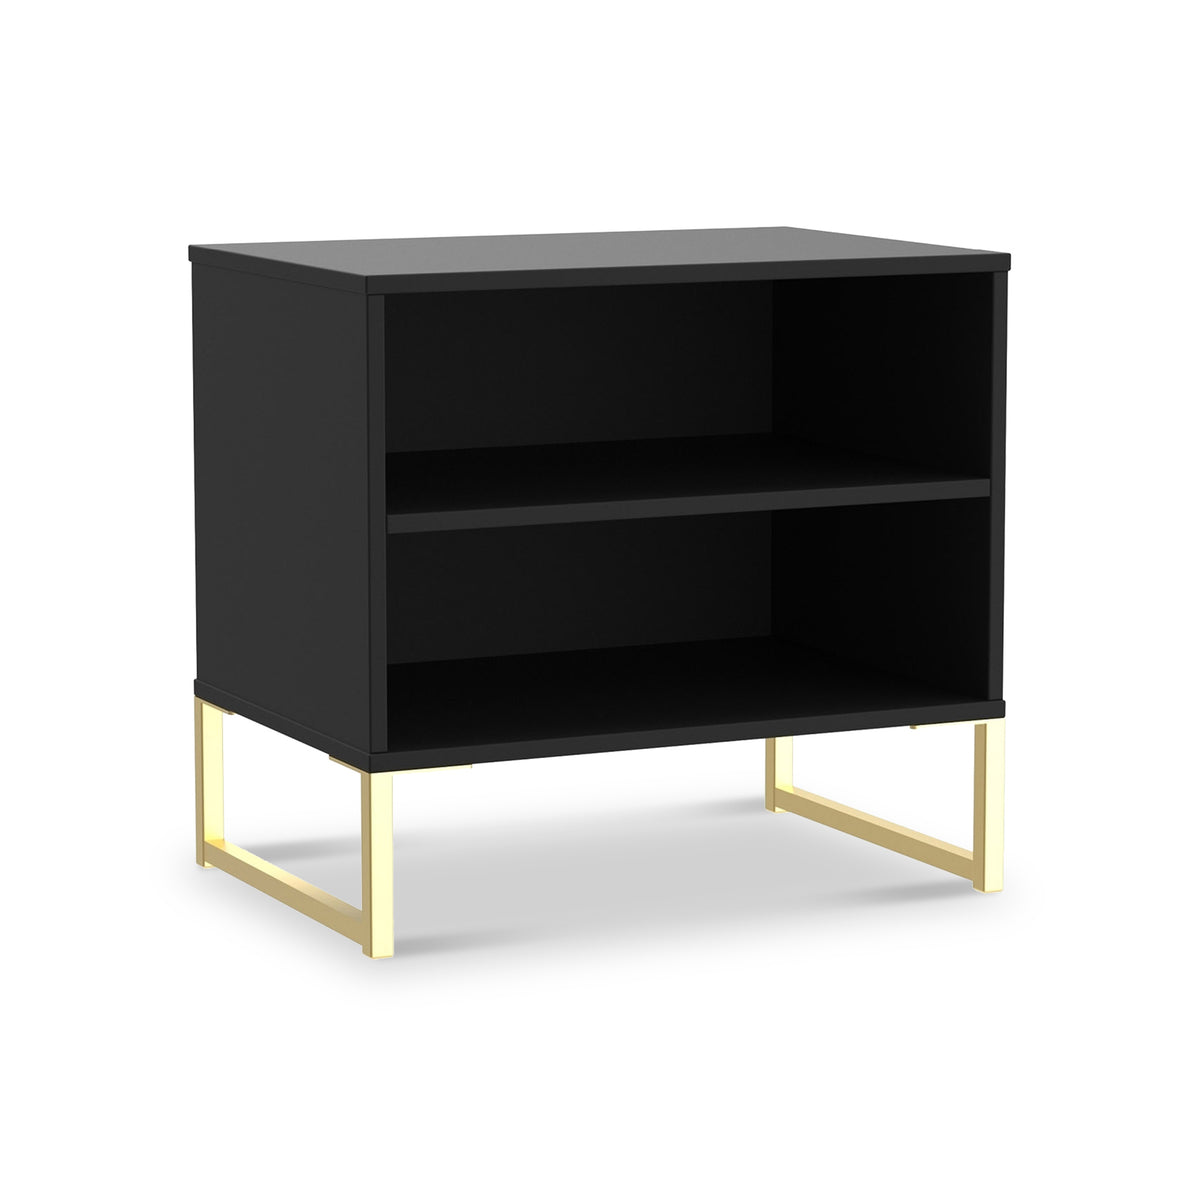 Hudson 2 Open Shelf Bedside in Black from Roseland Furniture